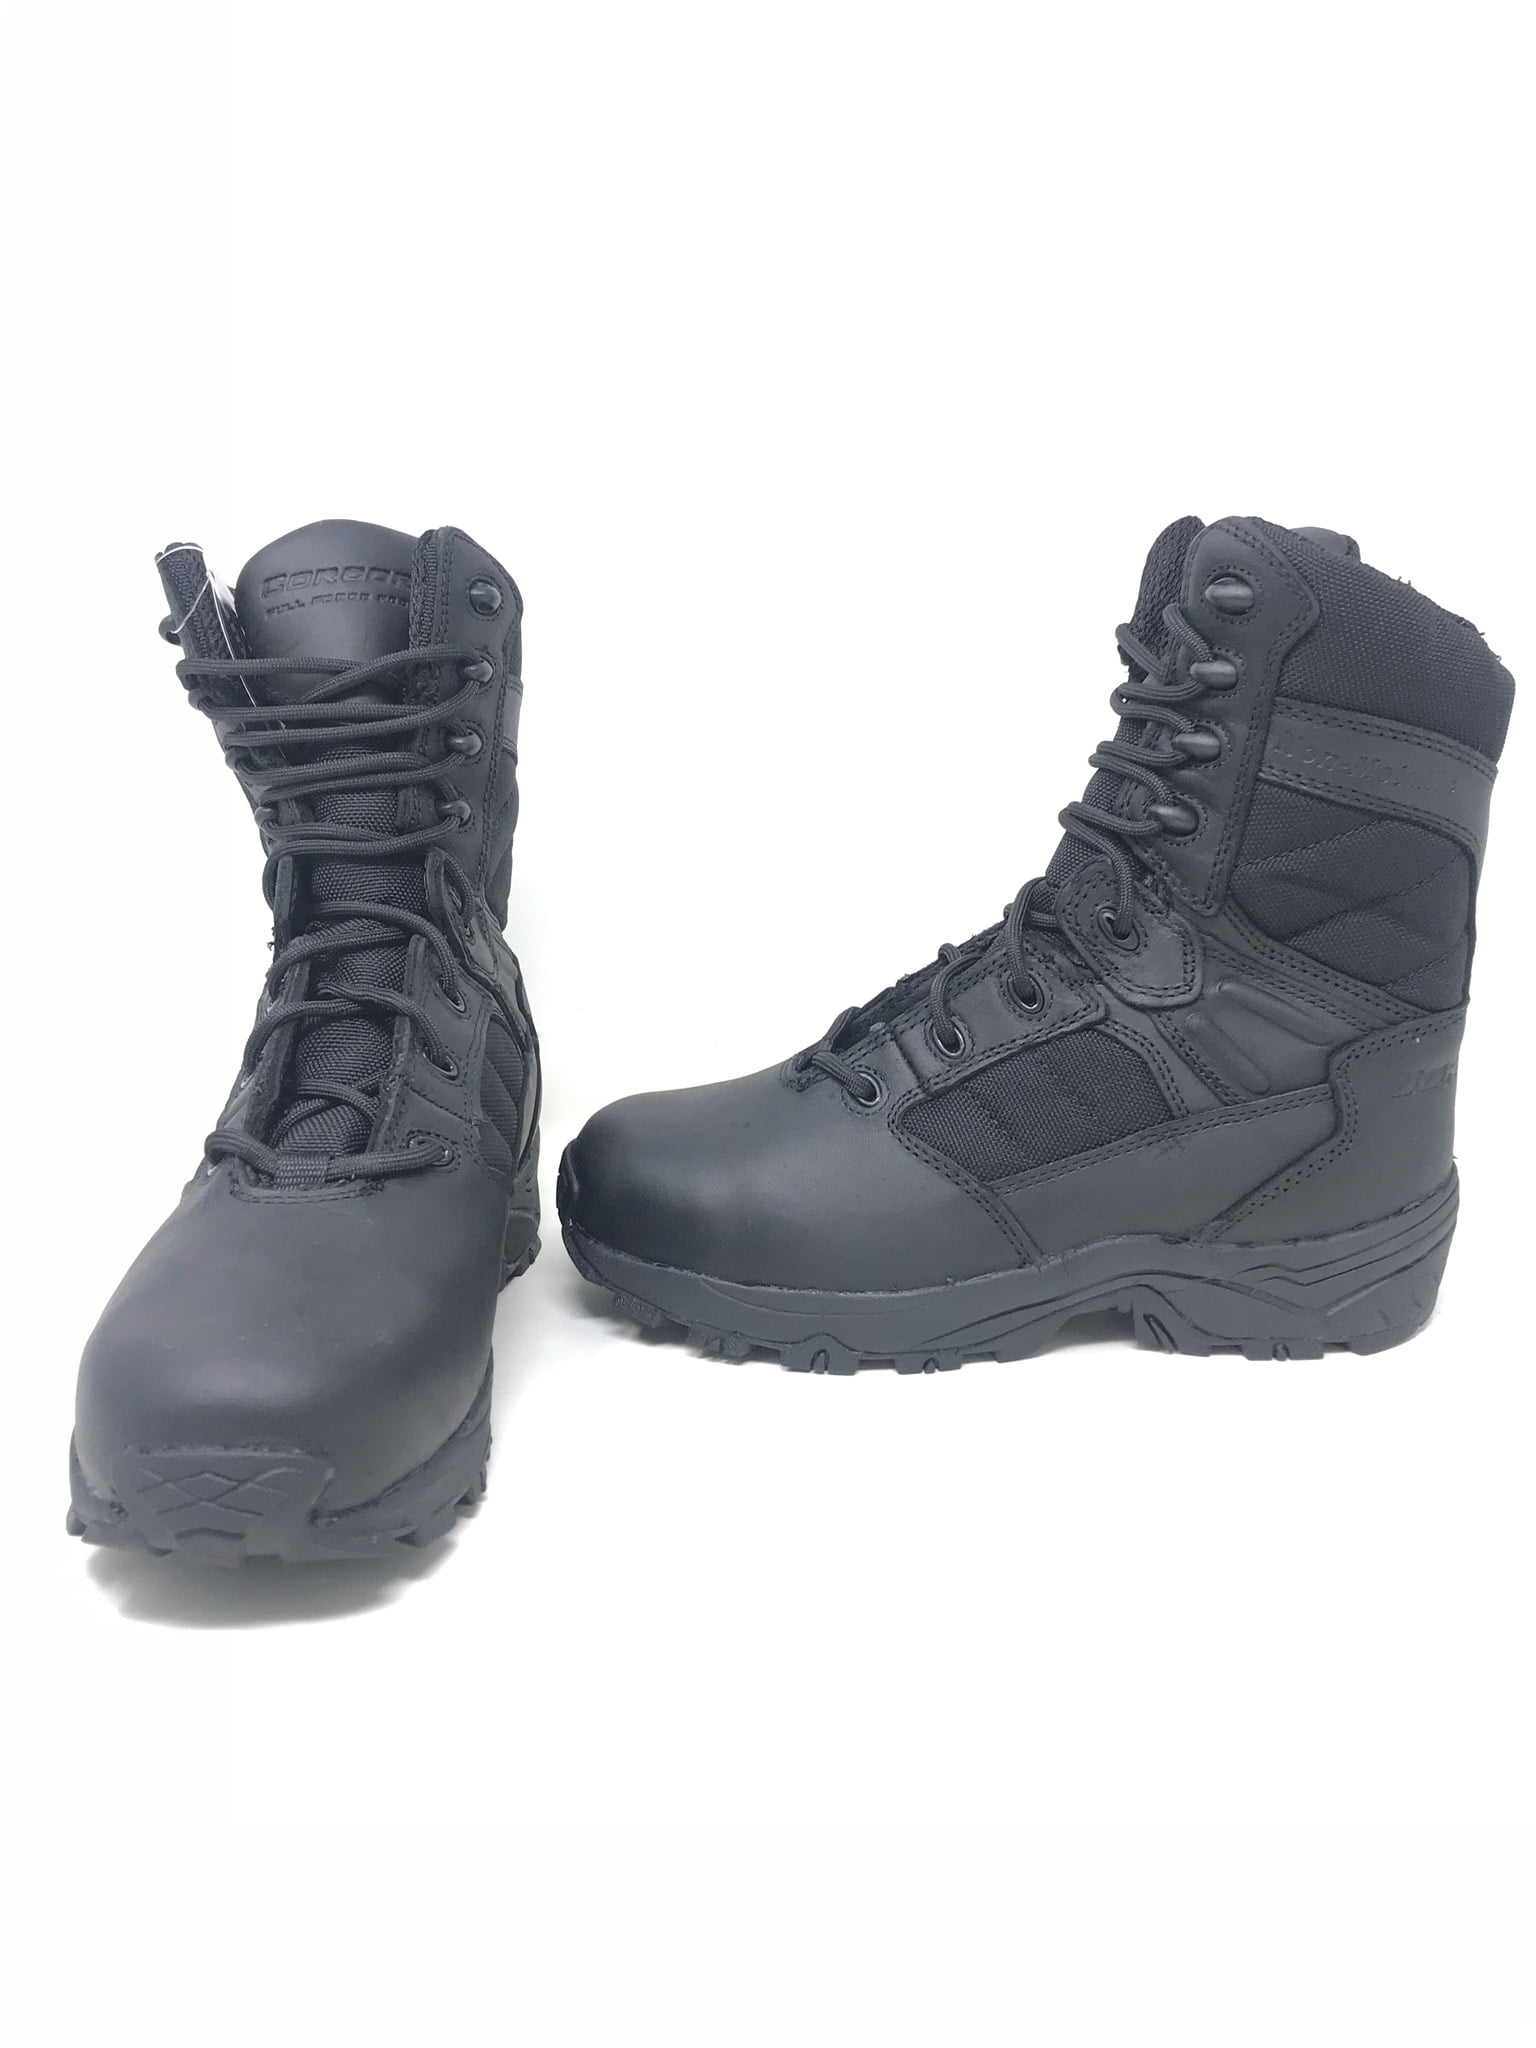 Corcoran Mens 8 Non-Metallic Tactical Boots Black 7.5 Medium CV5001 